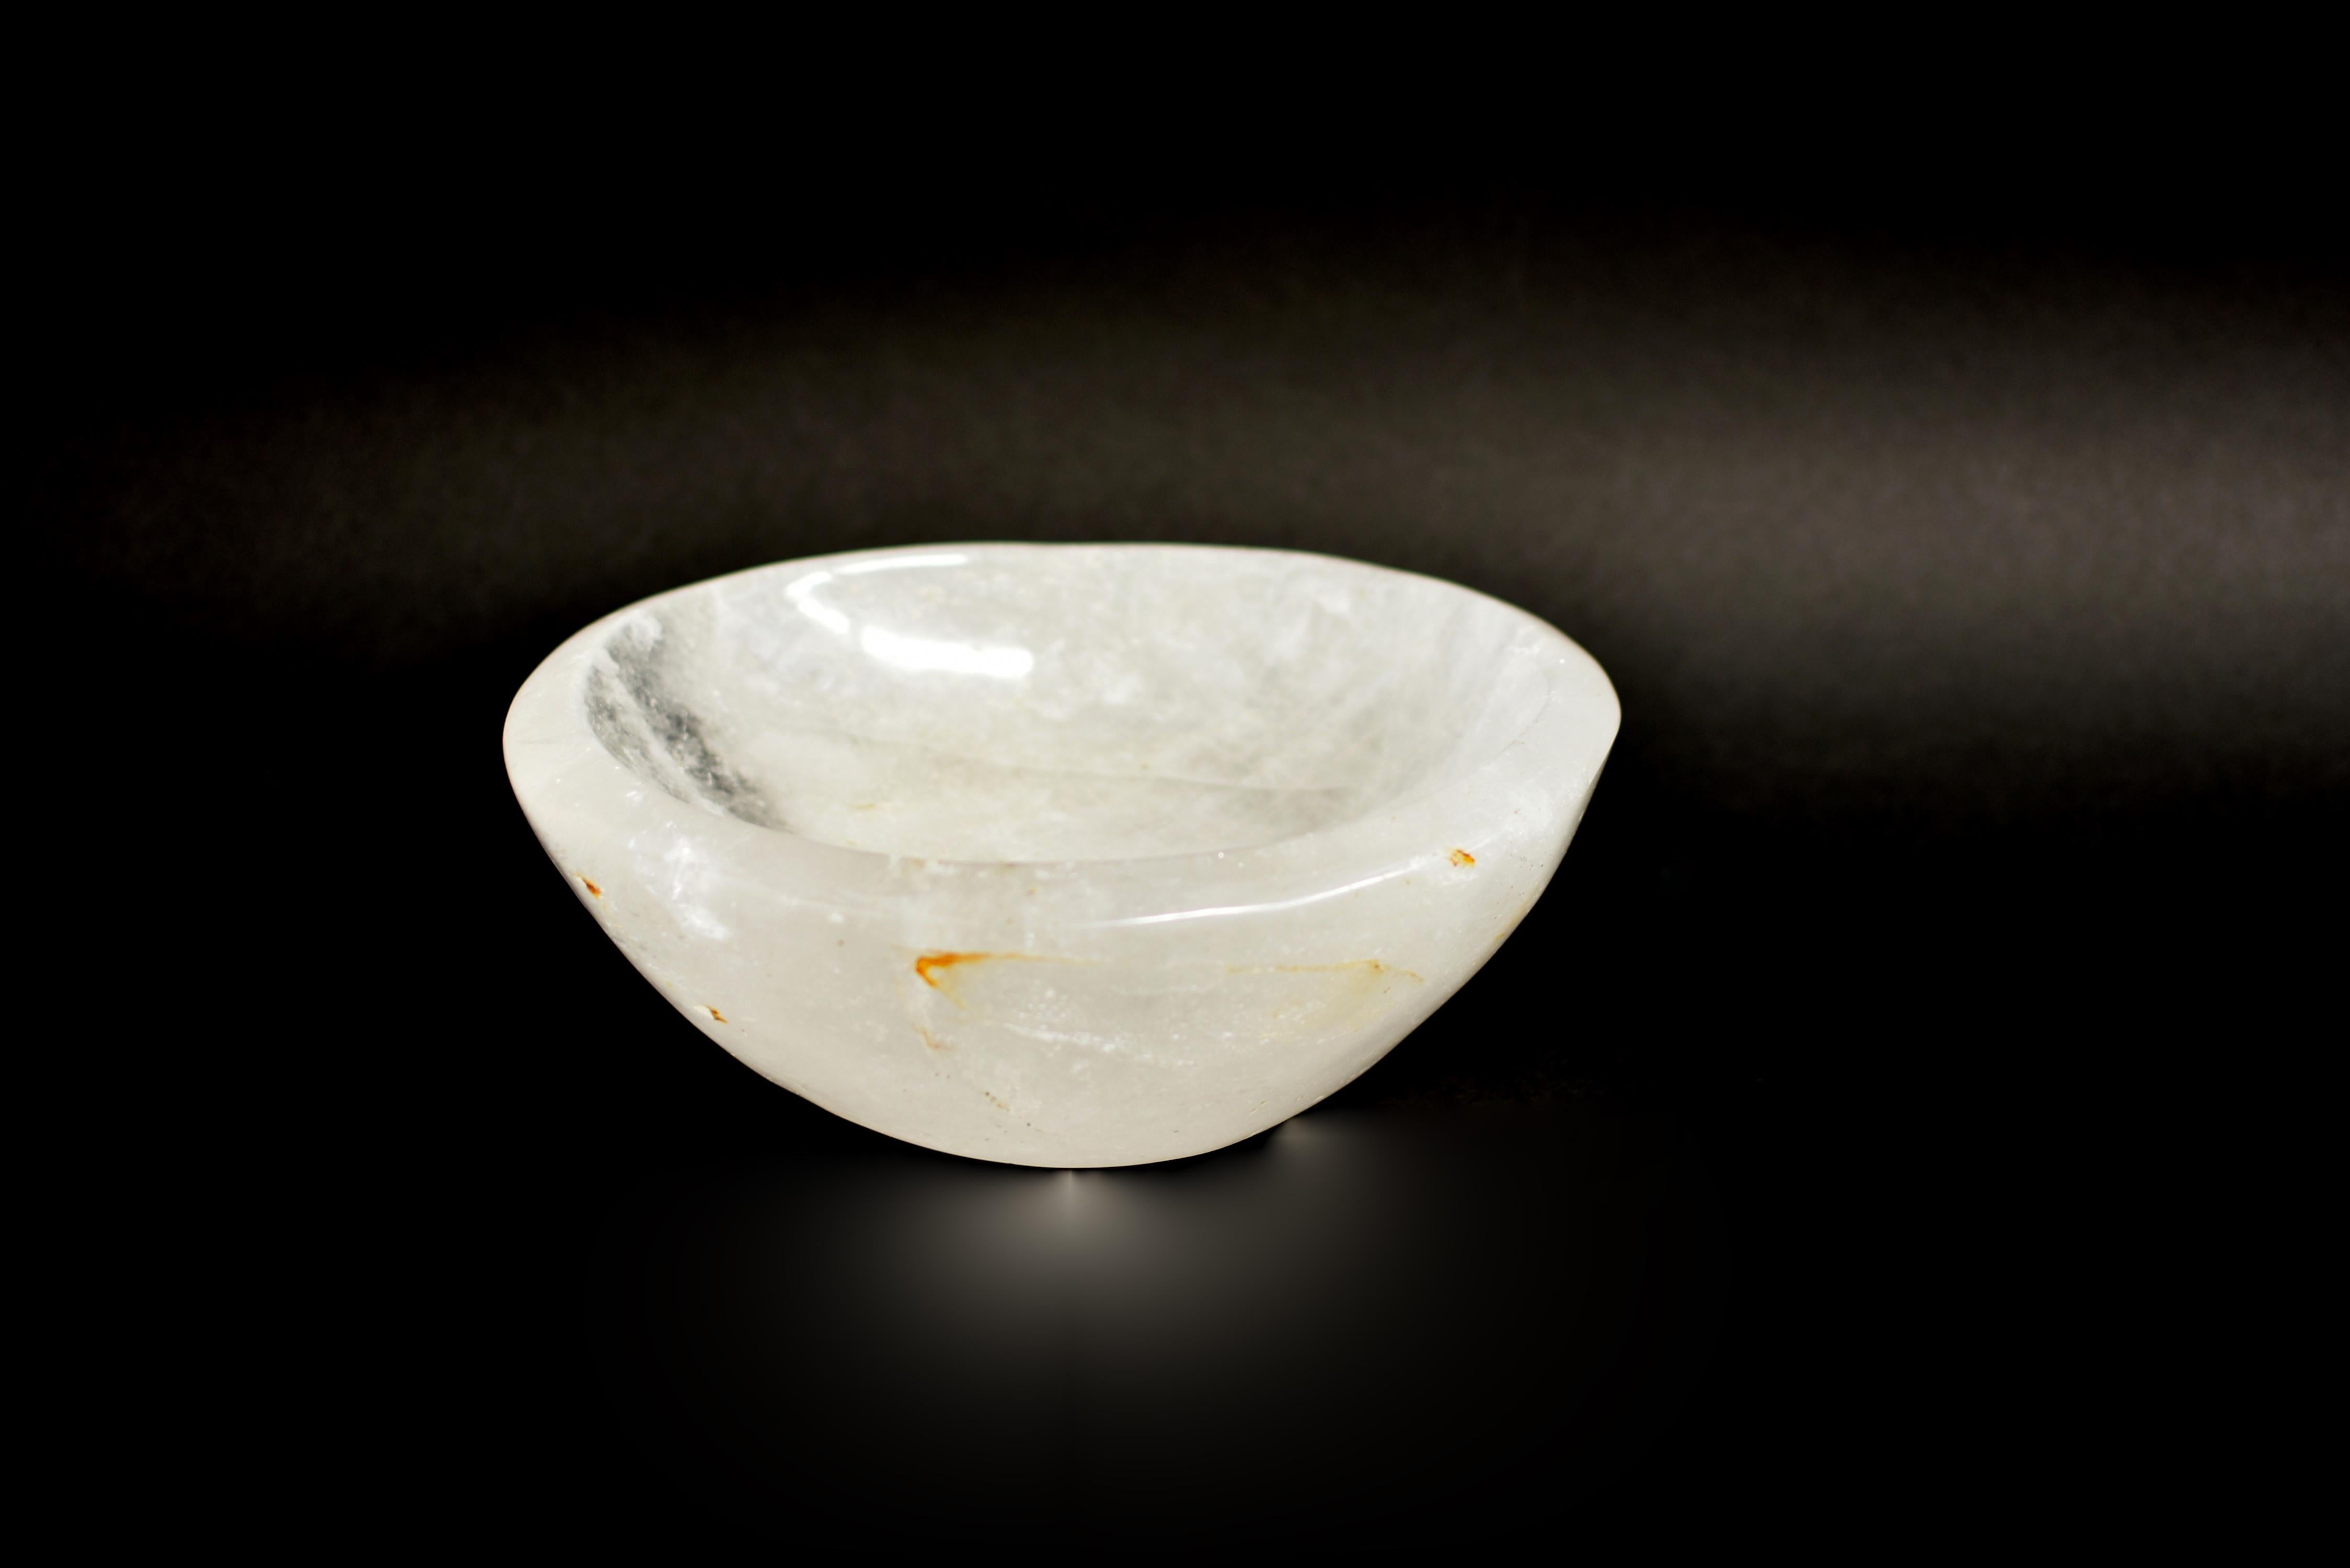 Un magnifique bol en cristal de roche entièrement naturel, taillé et poli à la main. Cristal de roche véritable de qualité AAA avec du rutile d'or rare. De forme organique avec une belle translucidité et irisation. Un objet d'art étonnant pour la